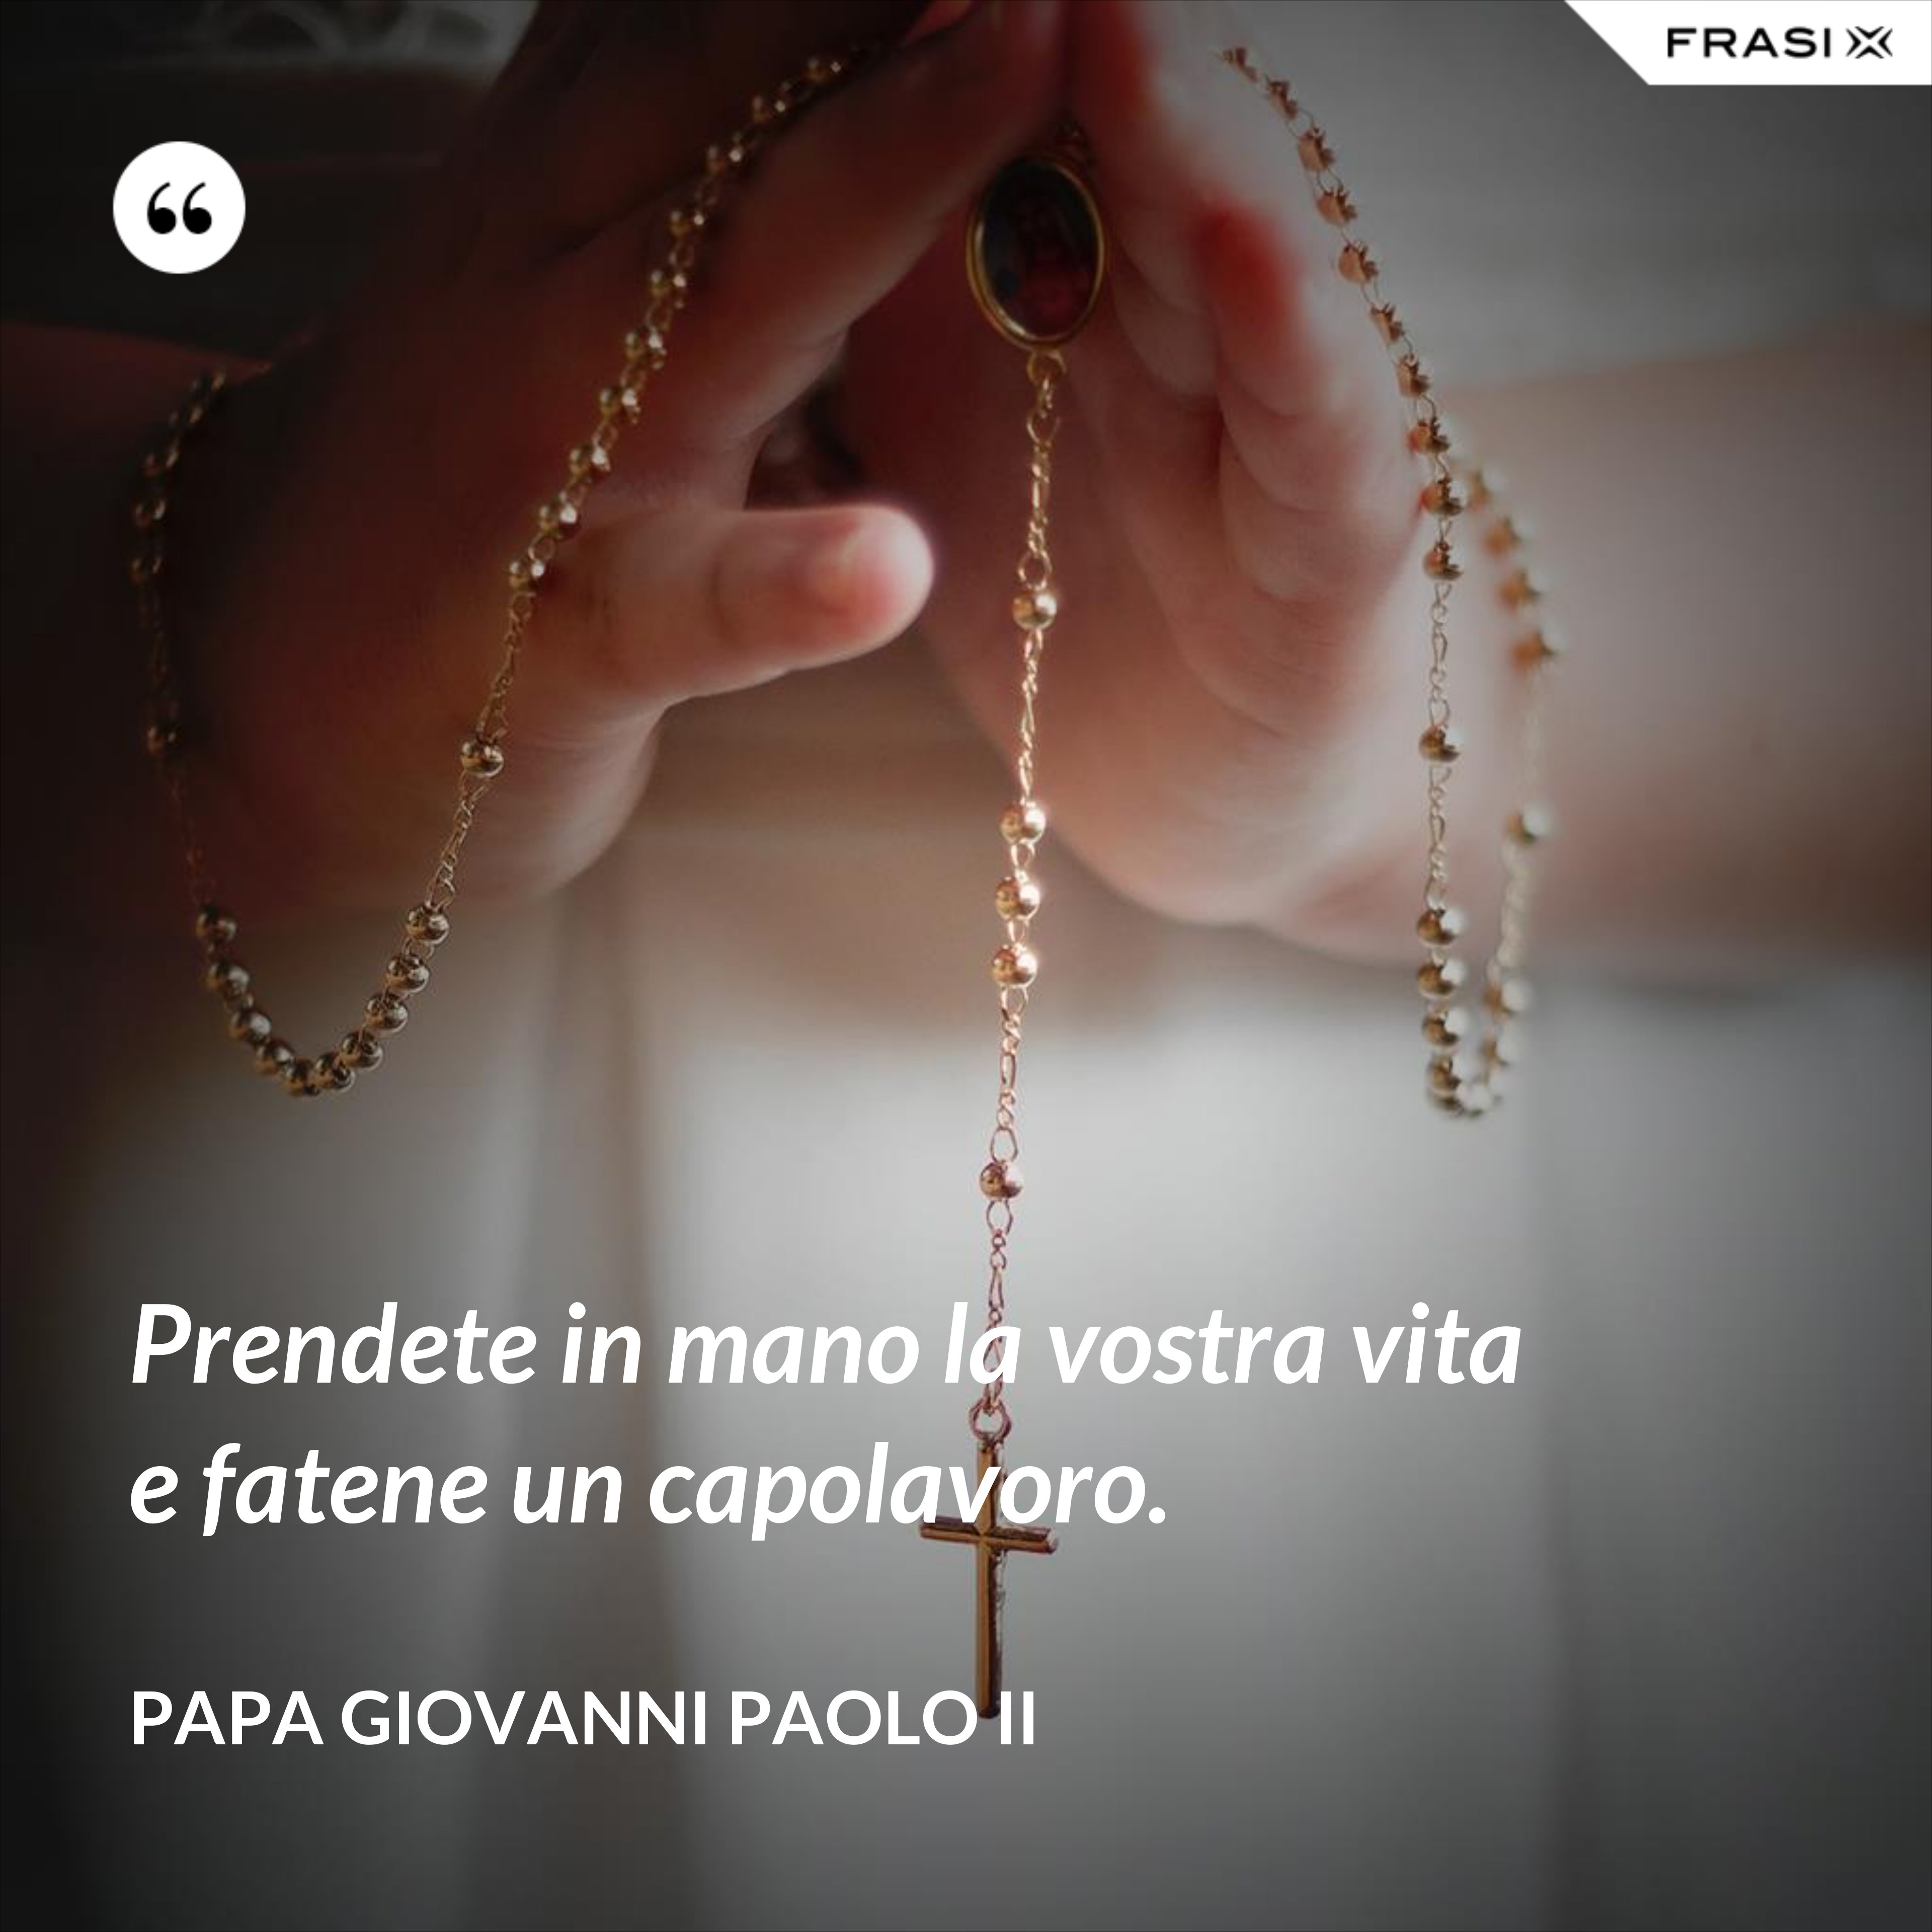 Prendete in mano la vostra vita e fatene un capolavoro. - Papa Giovanni Paolo II